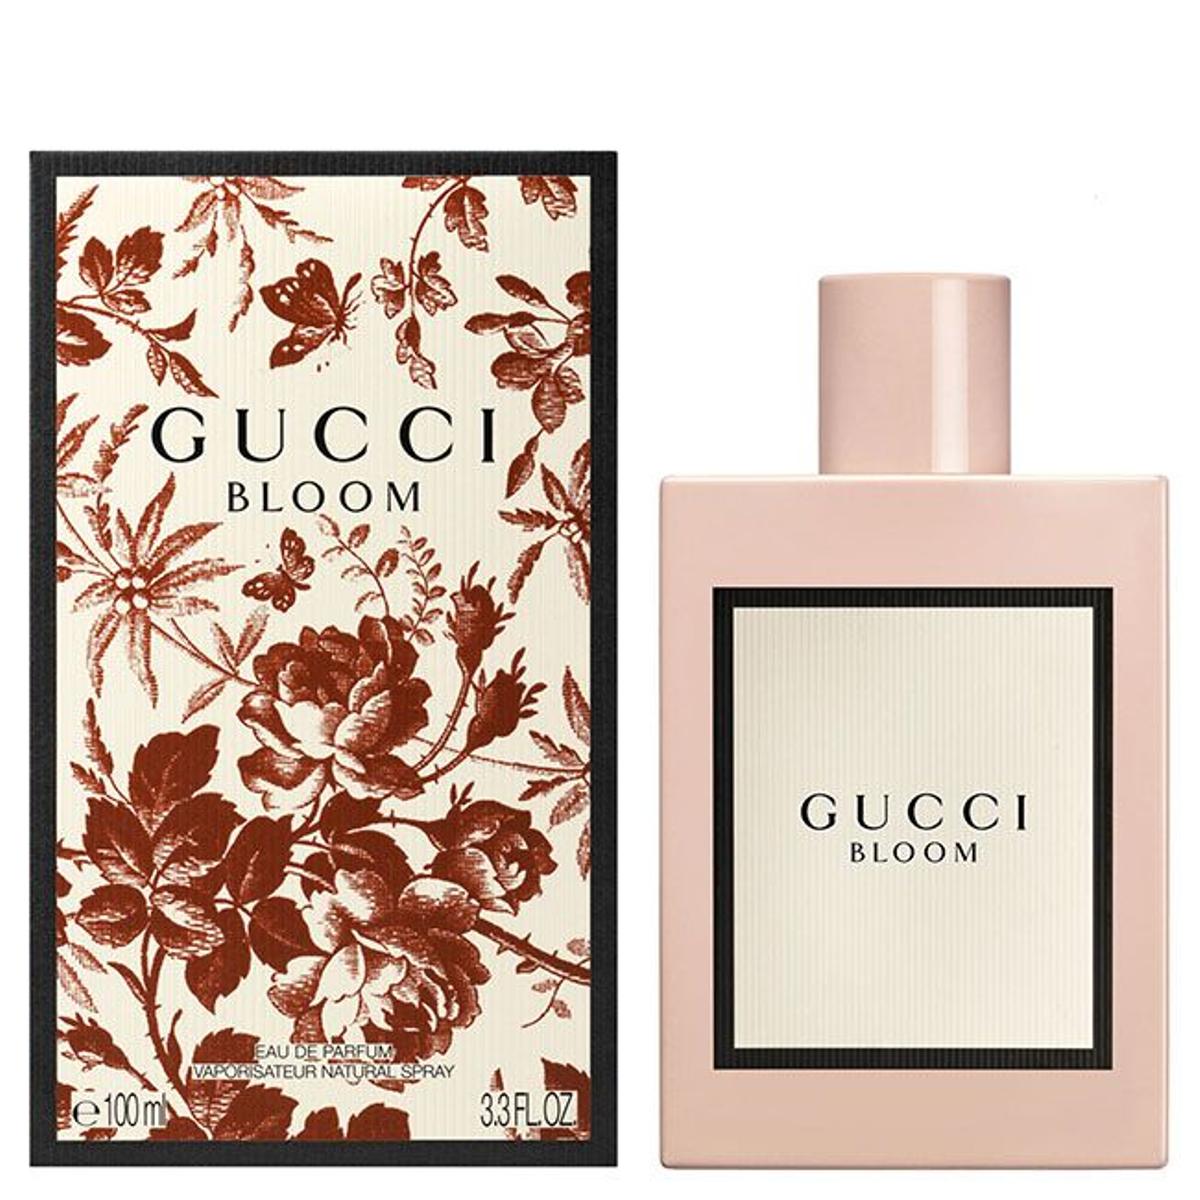 La nueva fragancia de Gucci, 'Gucci Bloom'